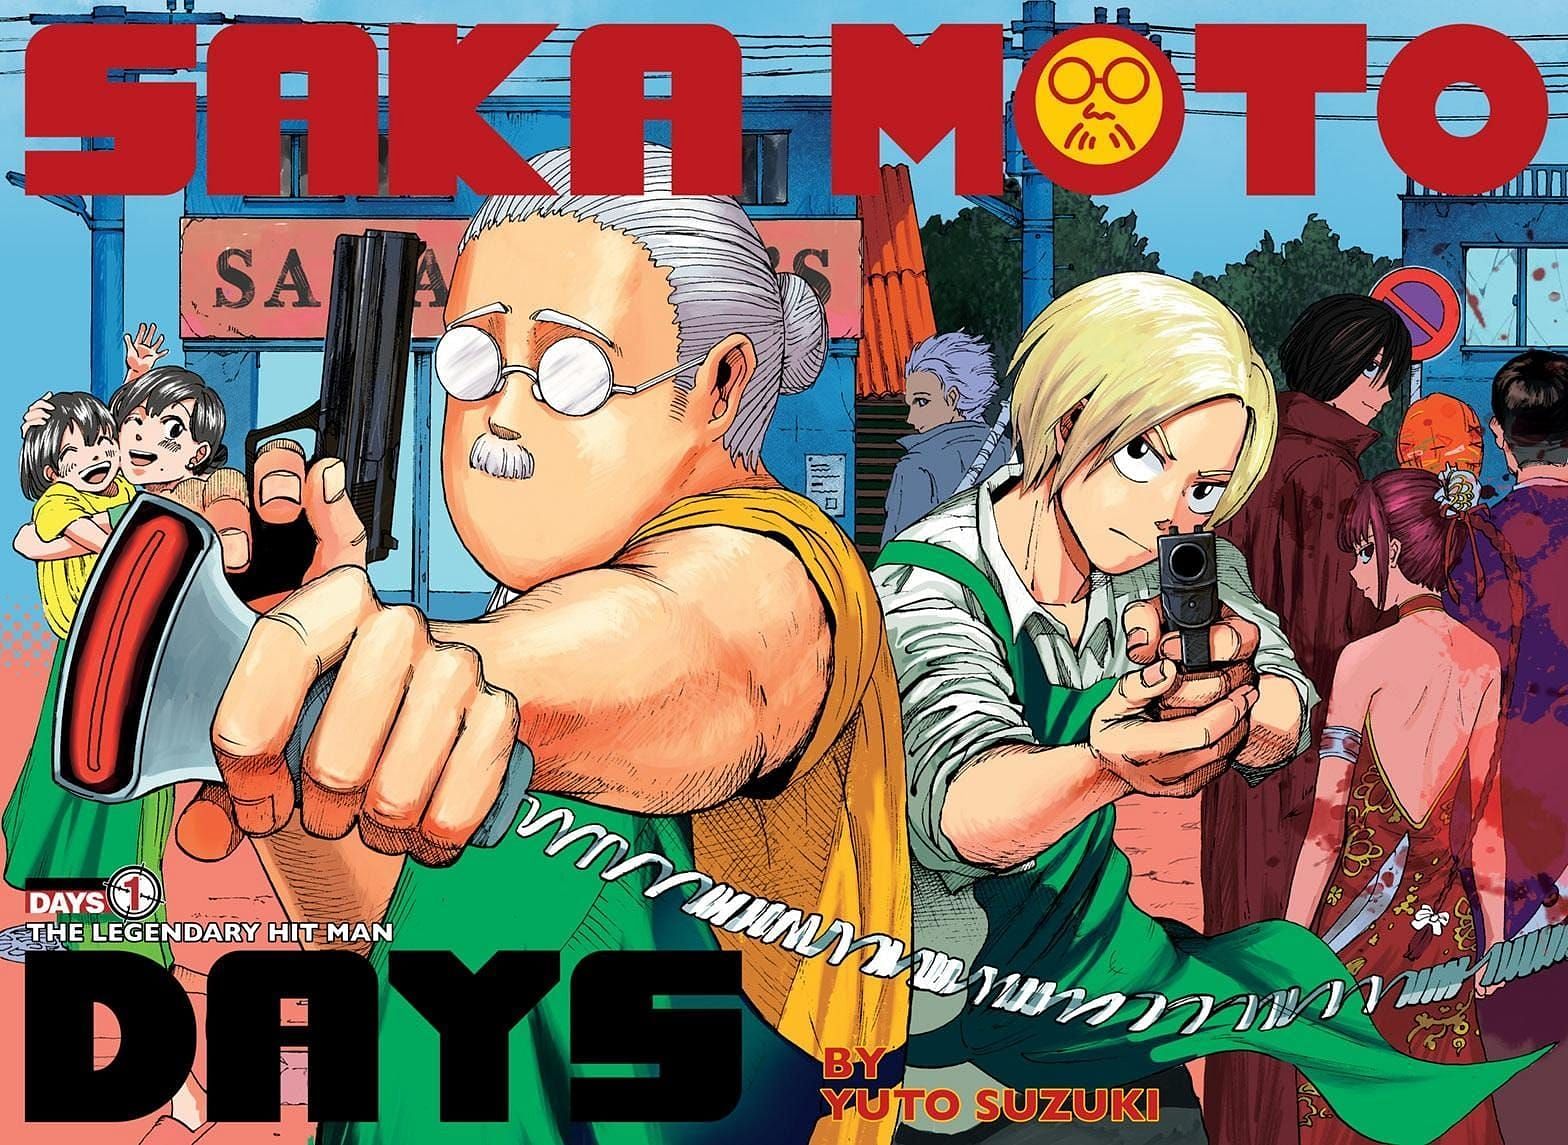 Sakamoto Days volume 1 cover art (Image via Suzuki Yuto/Shueisha)